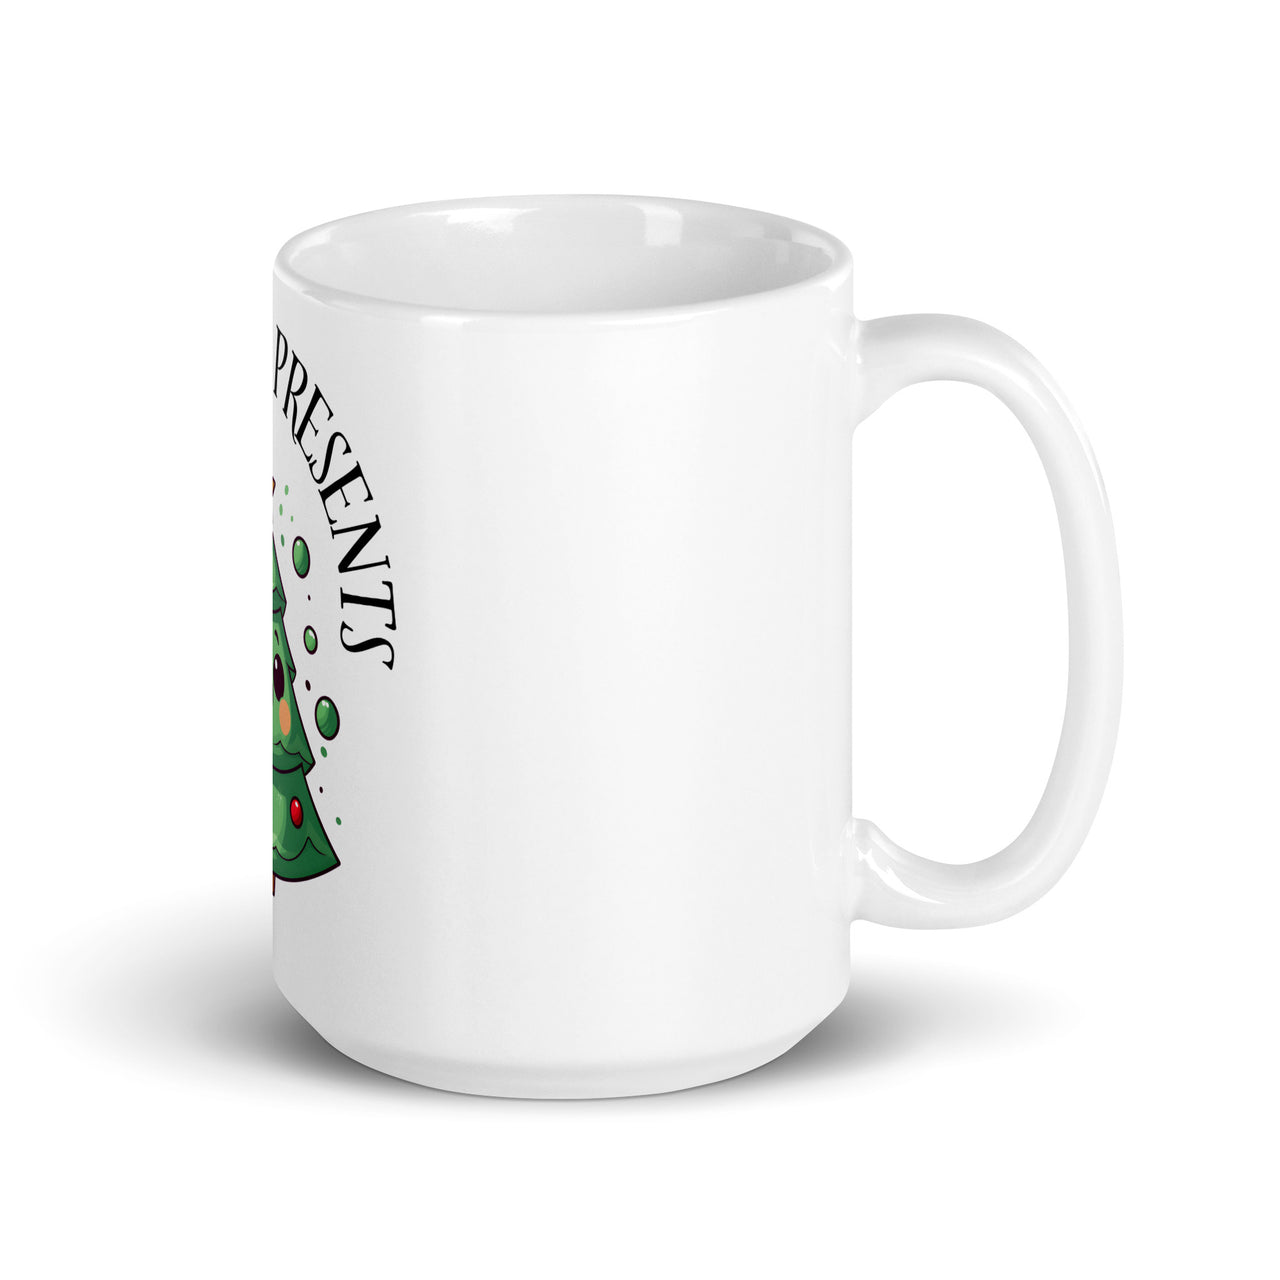 Pining for Presents: Cute Christmas Tree White Mug